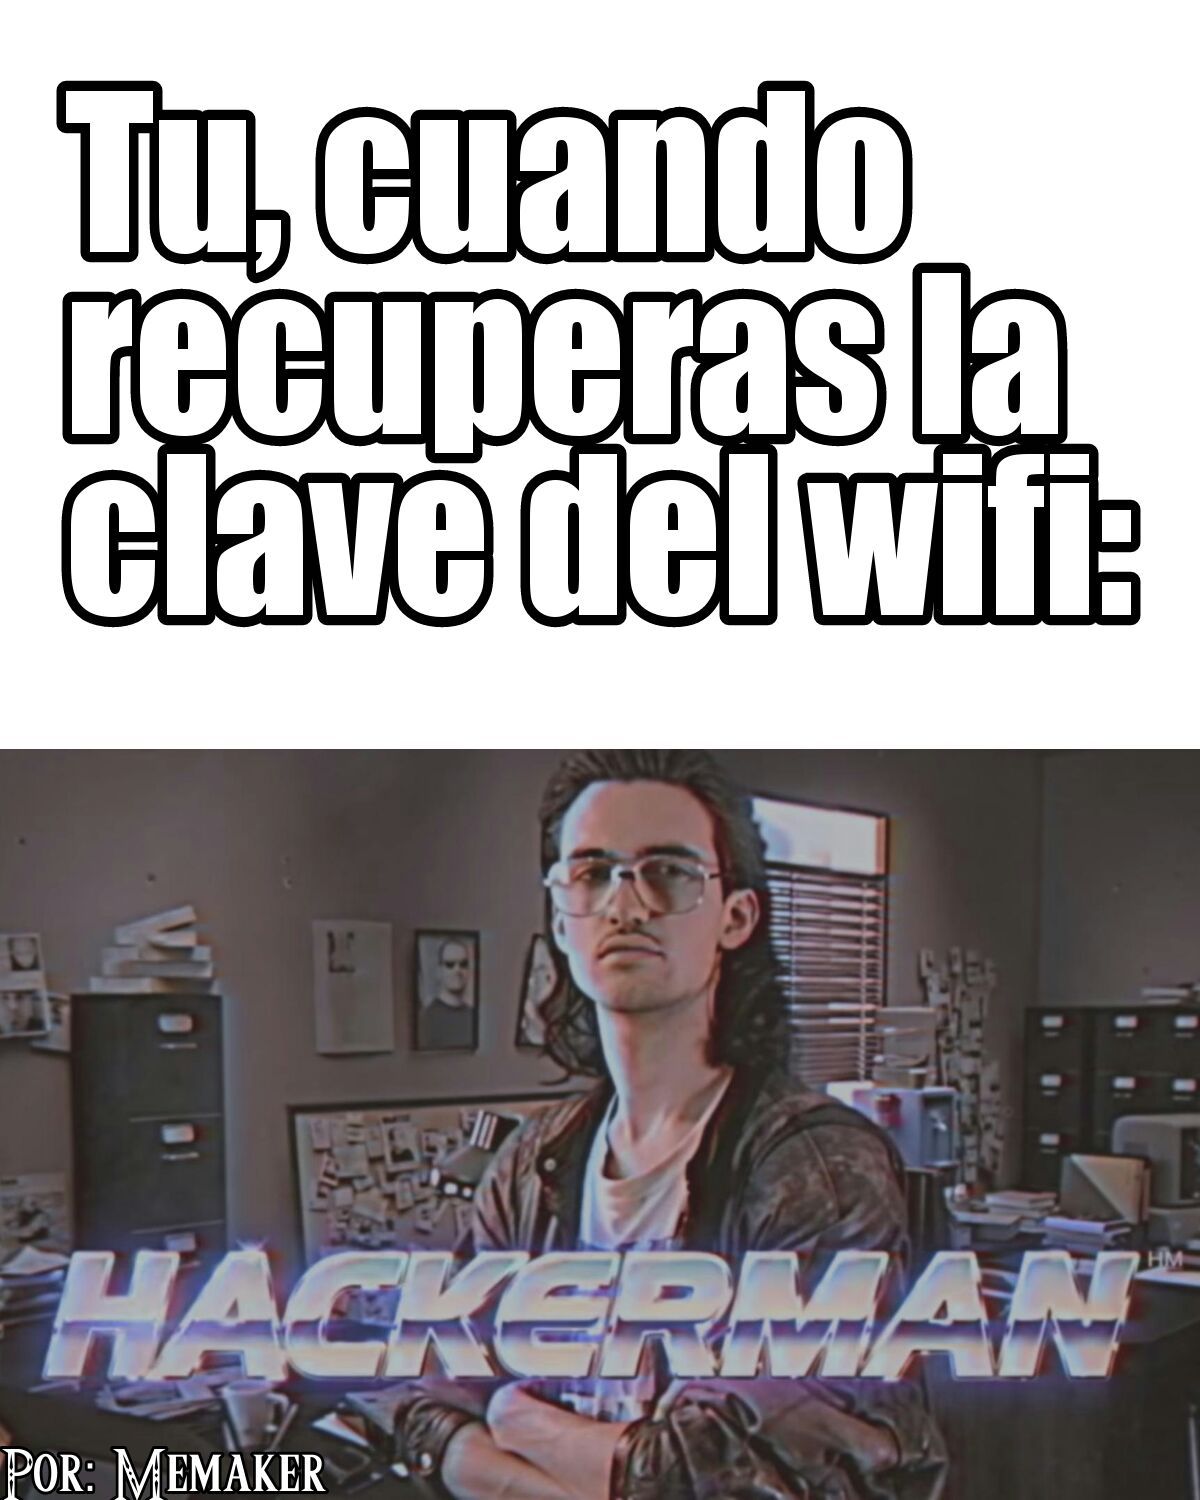 Hackerman! - meme